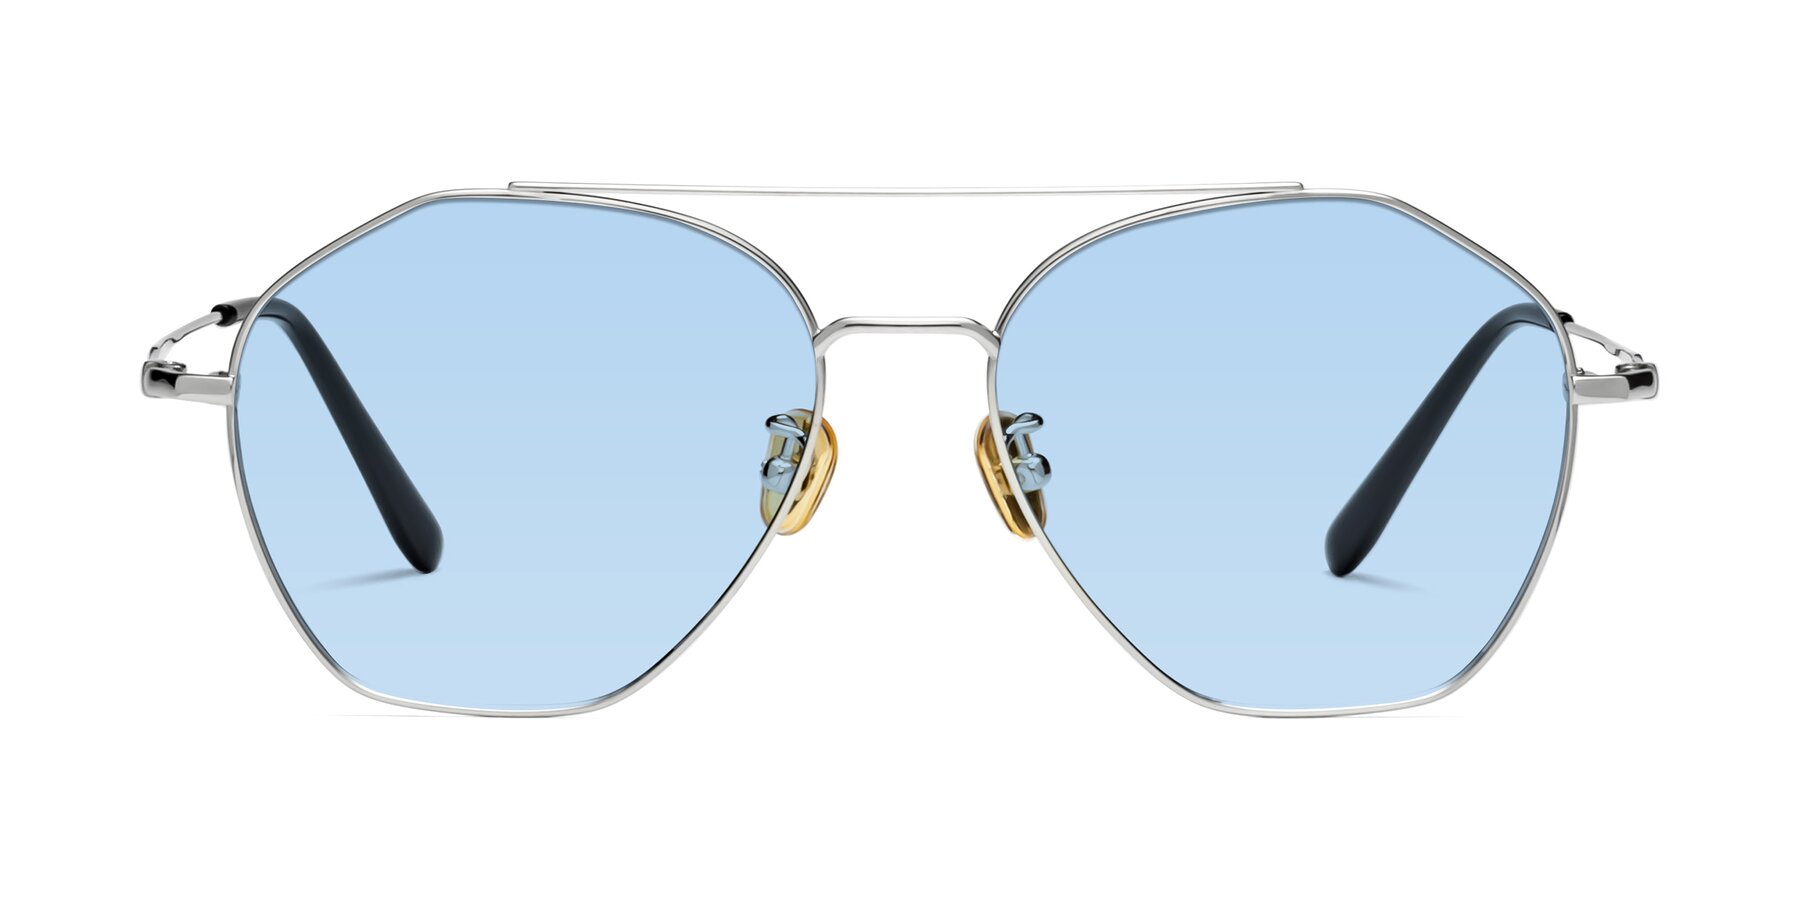 90042 - Silver Sunglasses